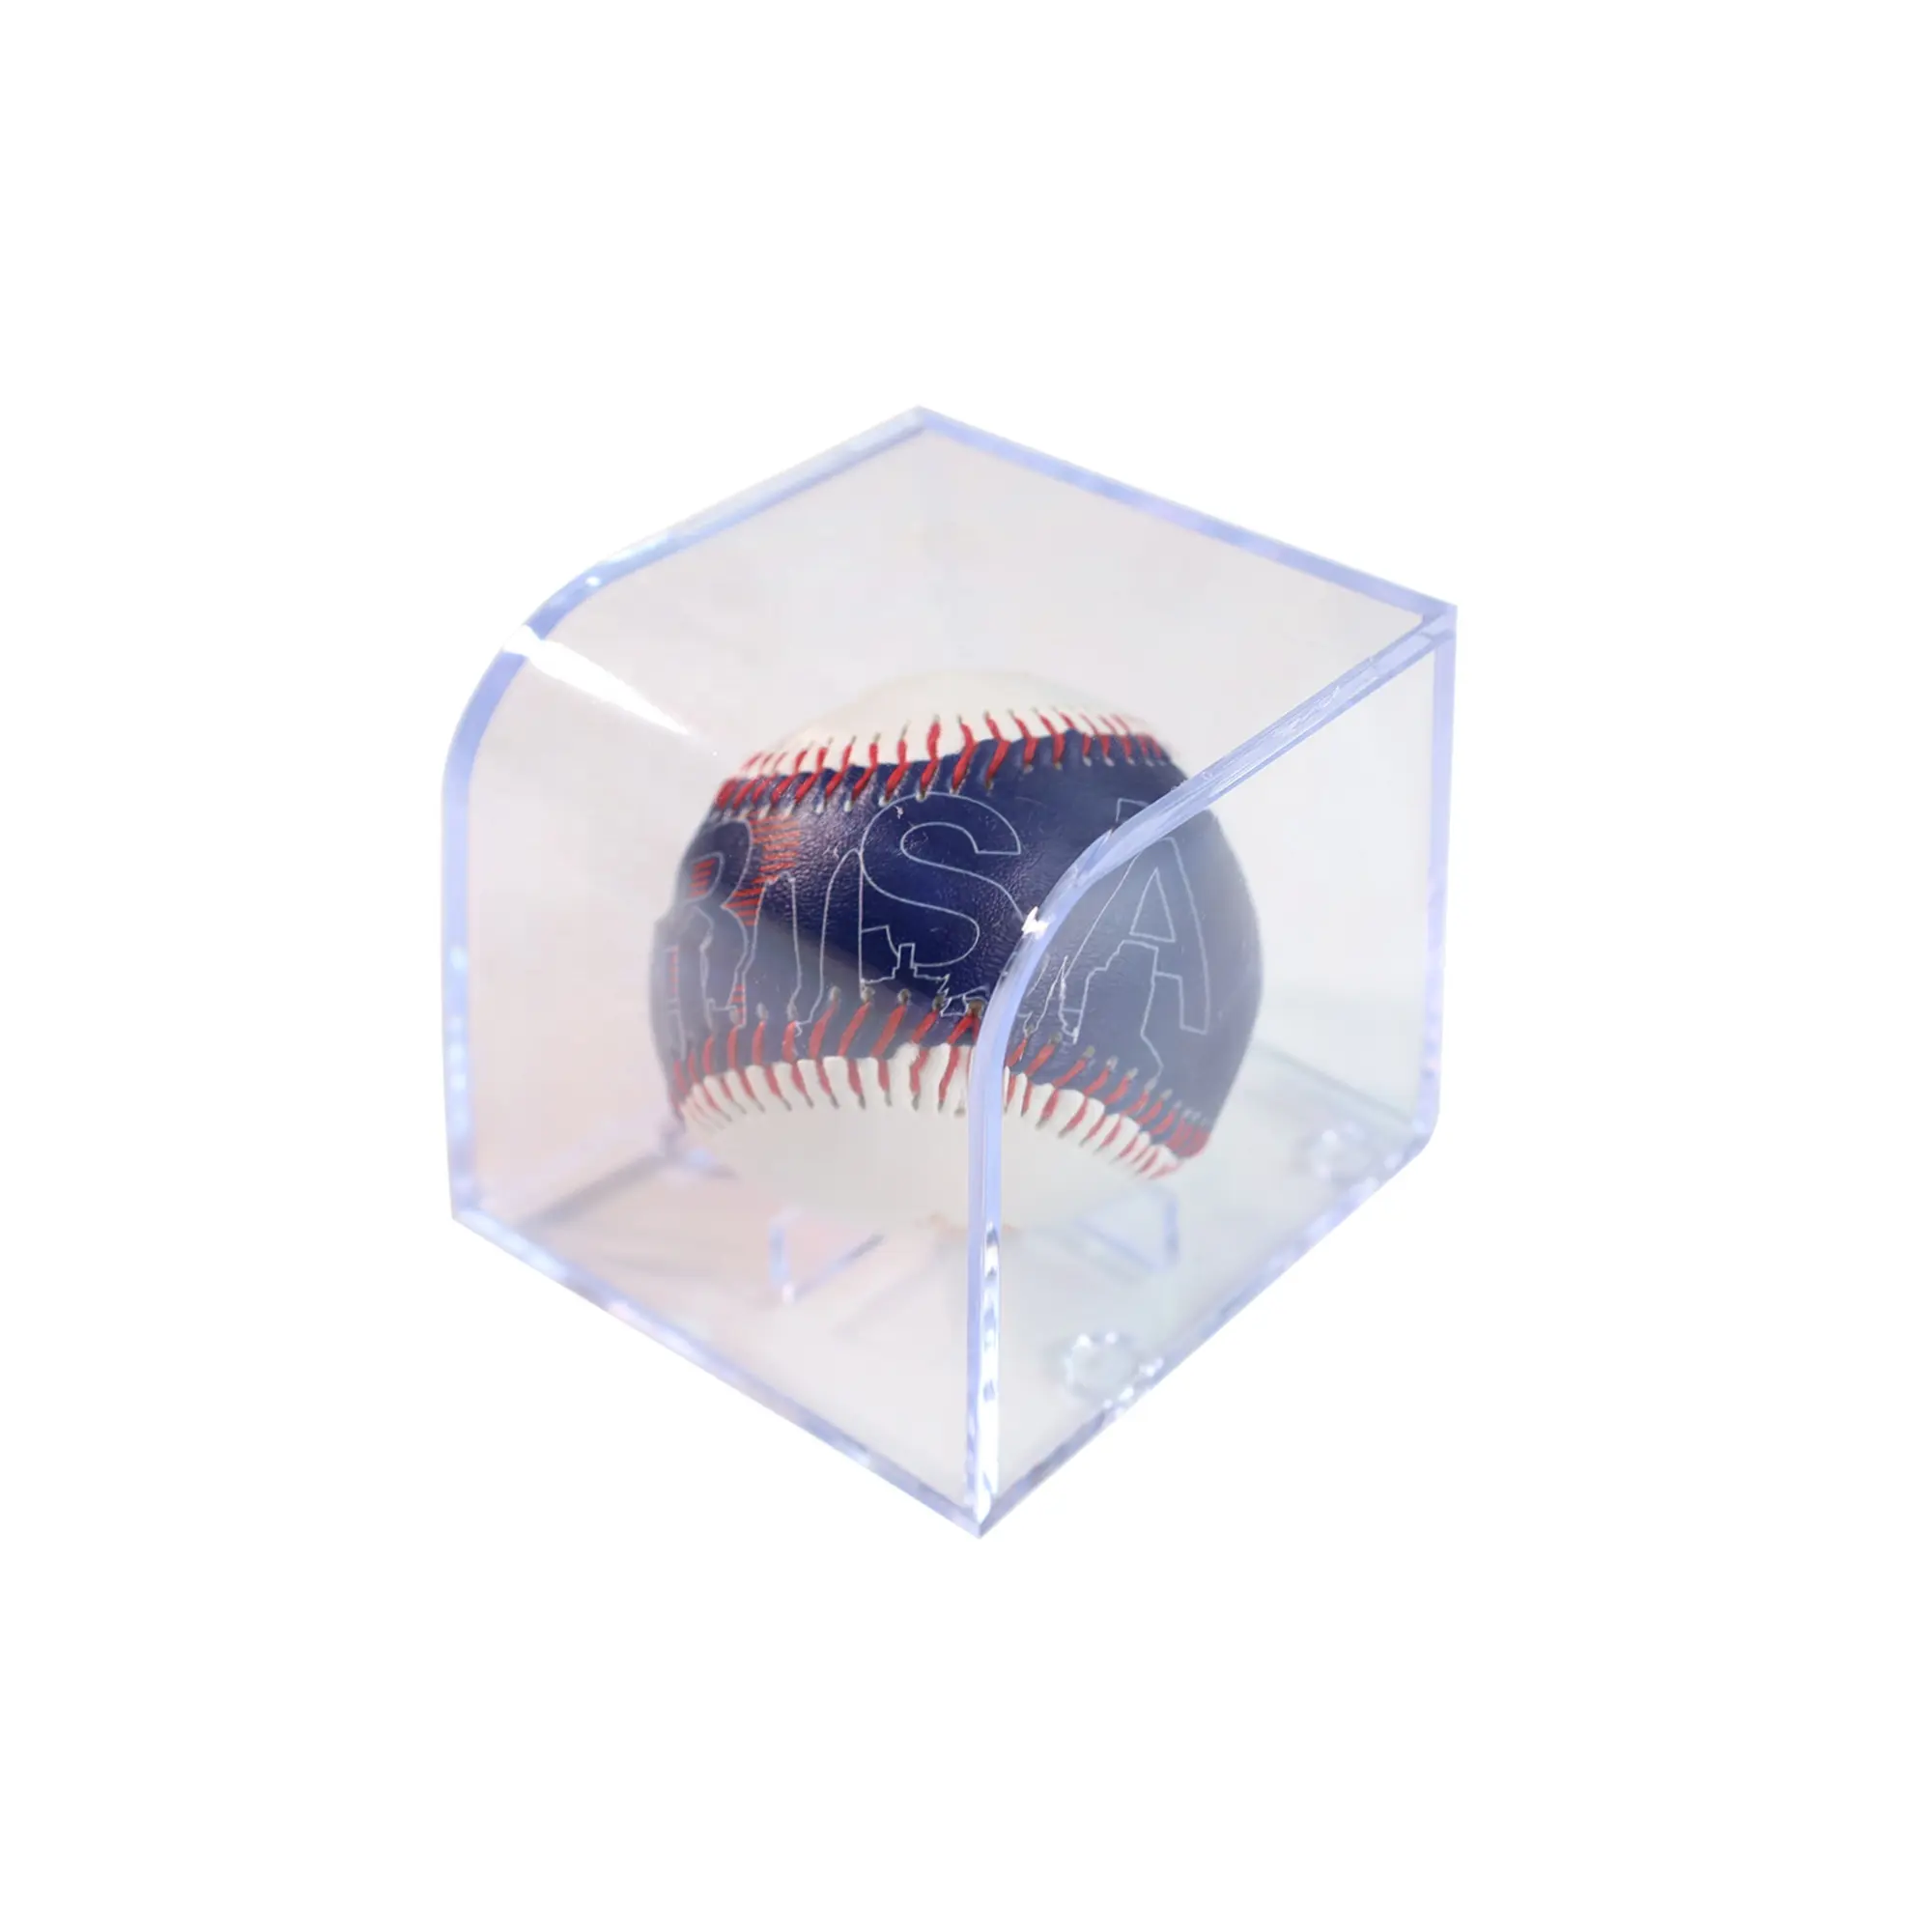 علبة تخزين بيسبول مكعب إيستومي بحامل عرض أكريليك تخزين بيسبول رسمي محمي من الأشعة الفوق بنفطية